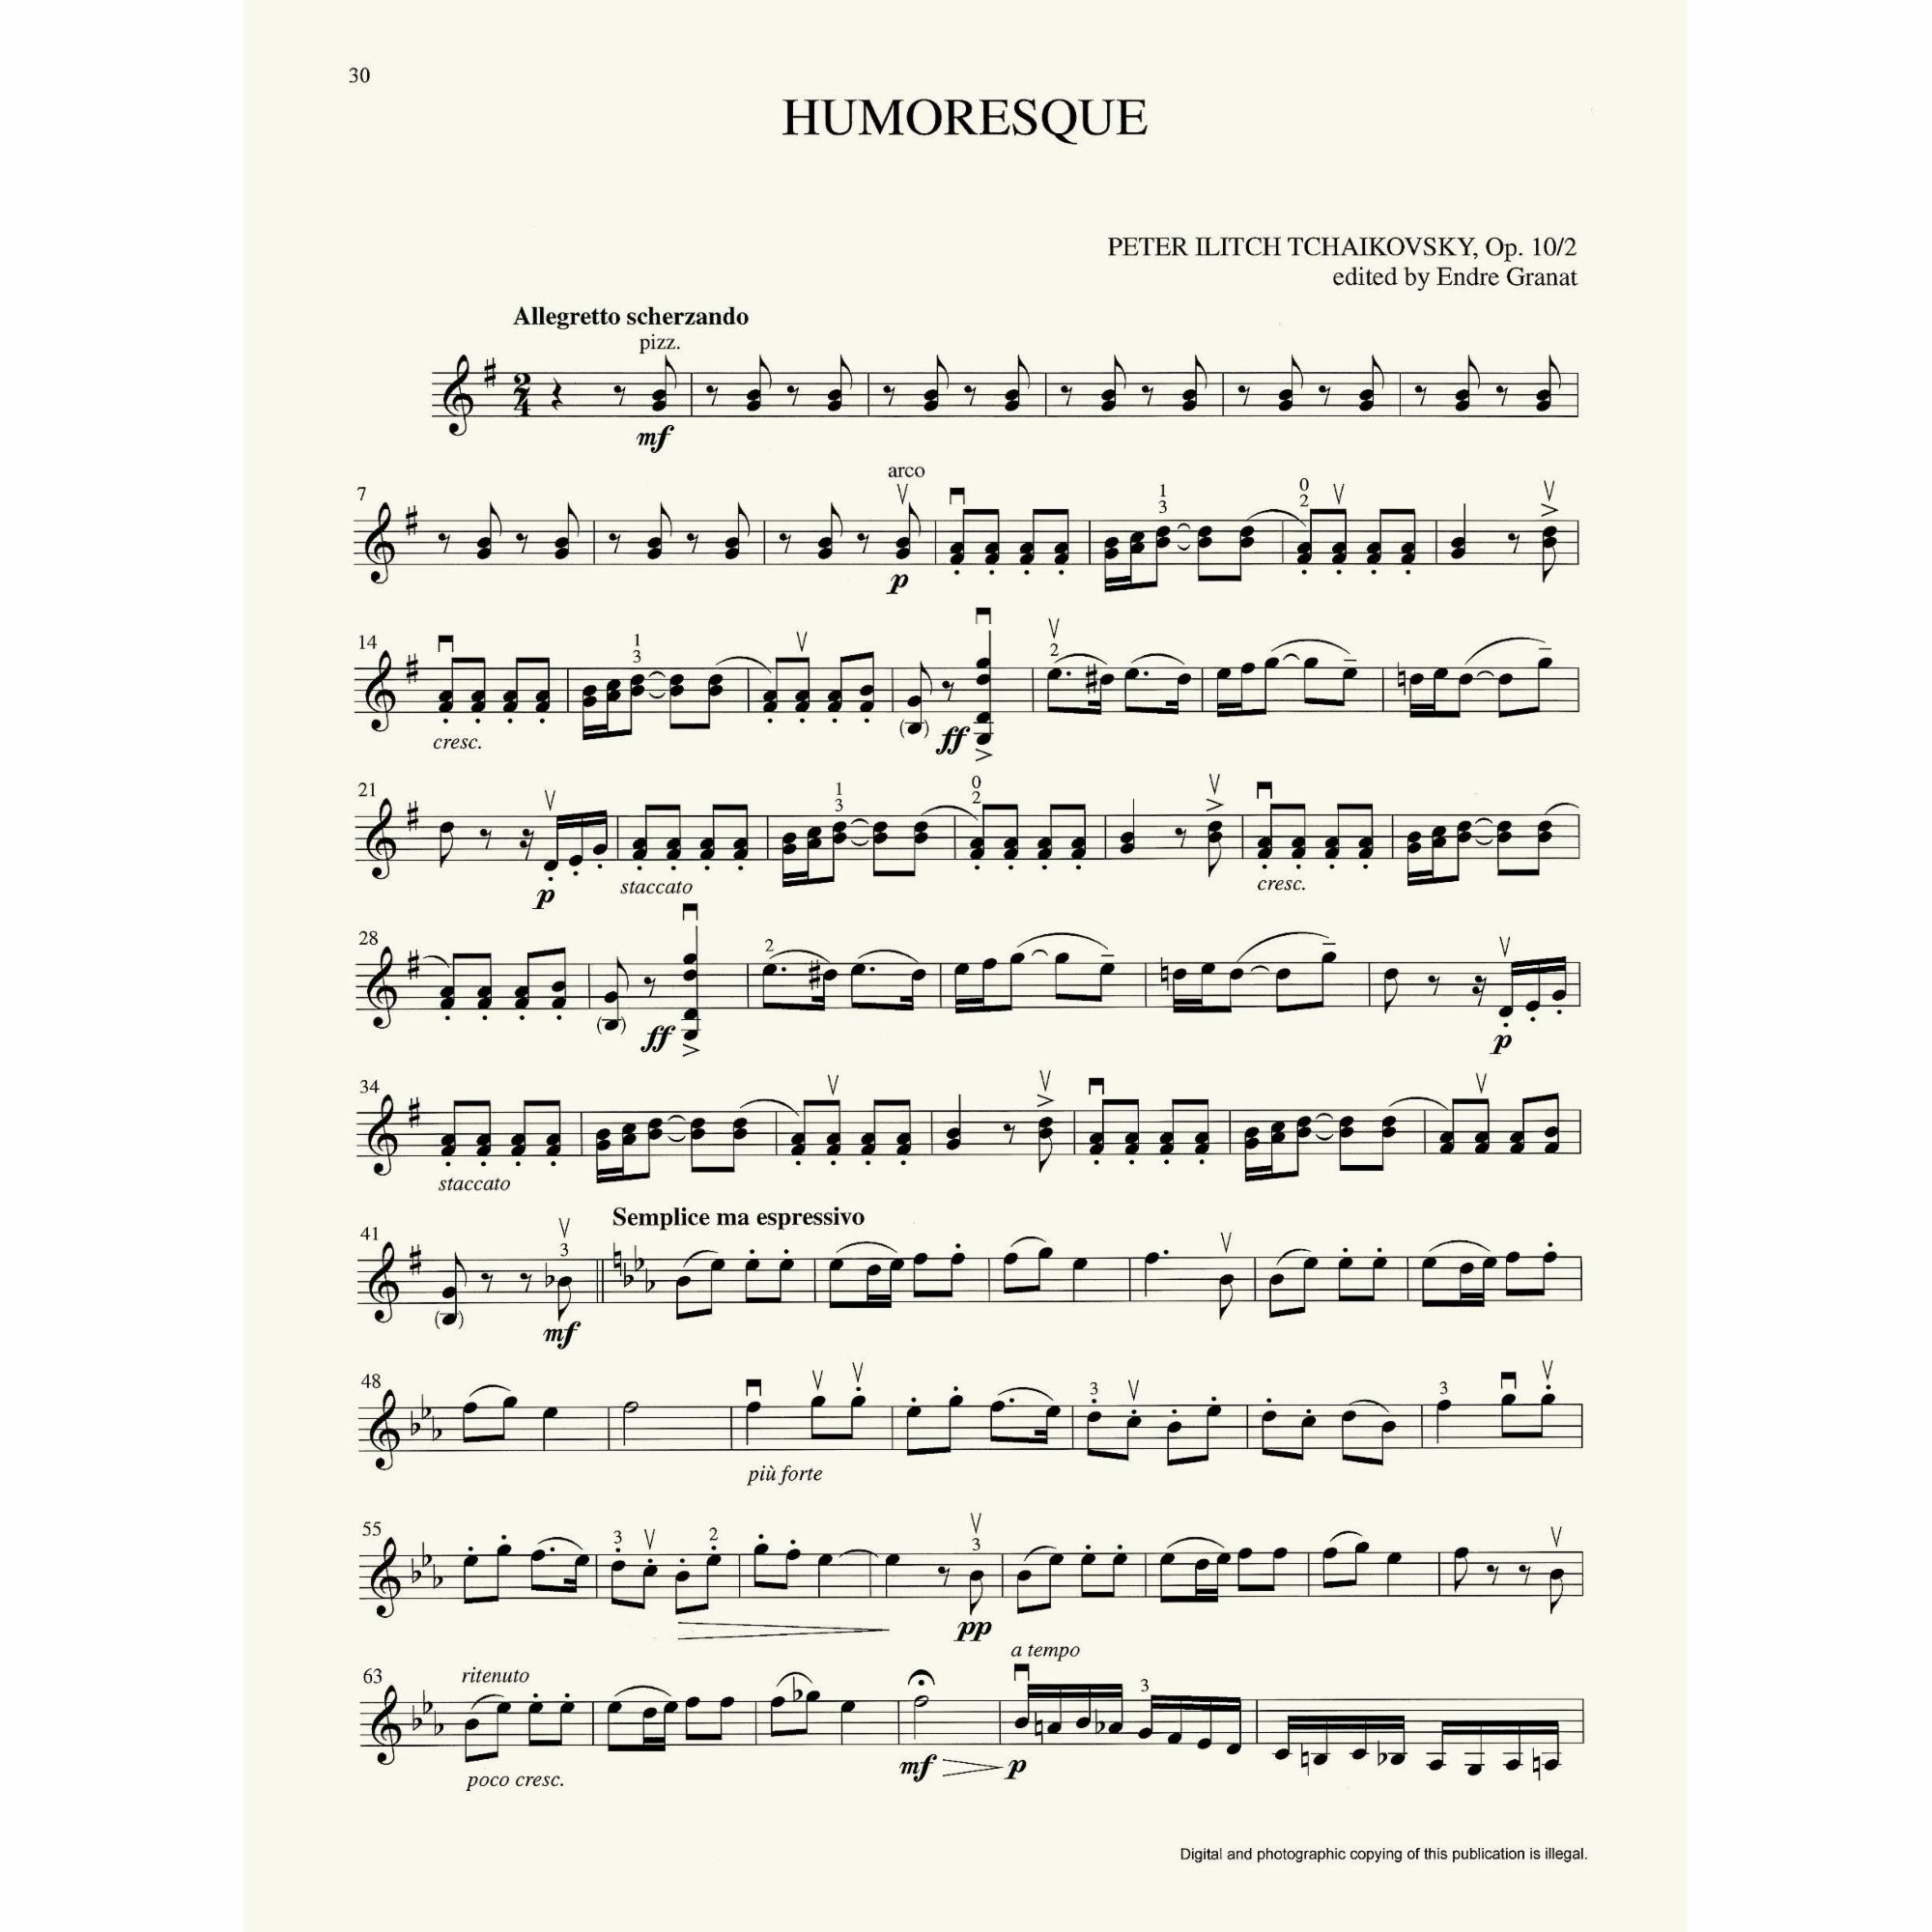 Sample: Violin (Pg. 30)